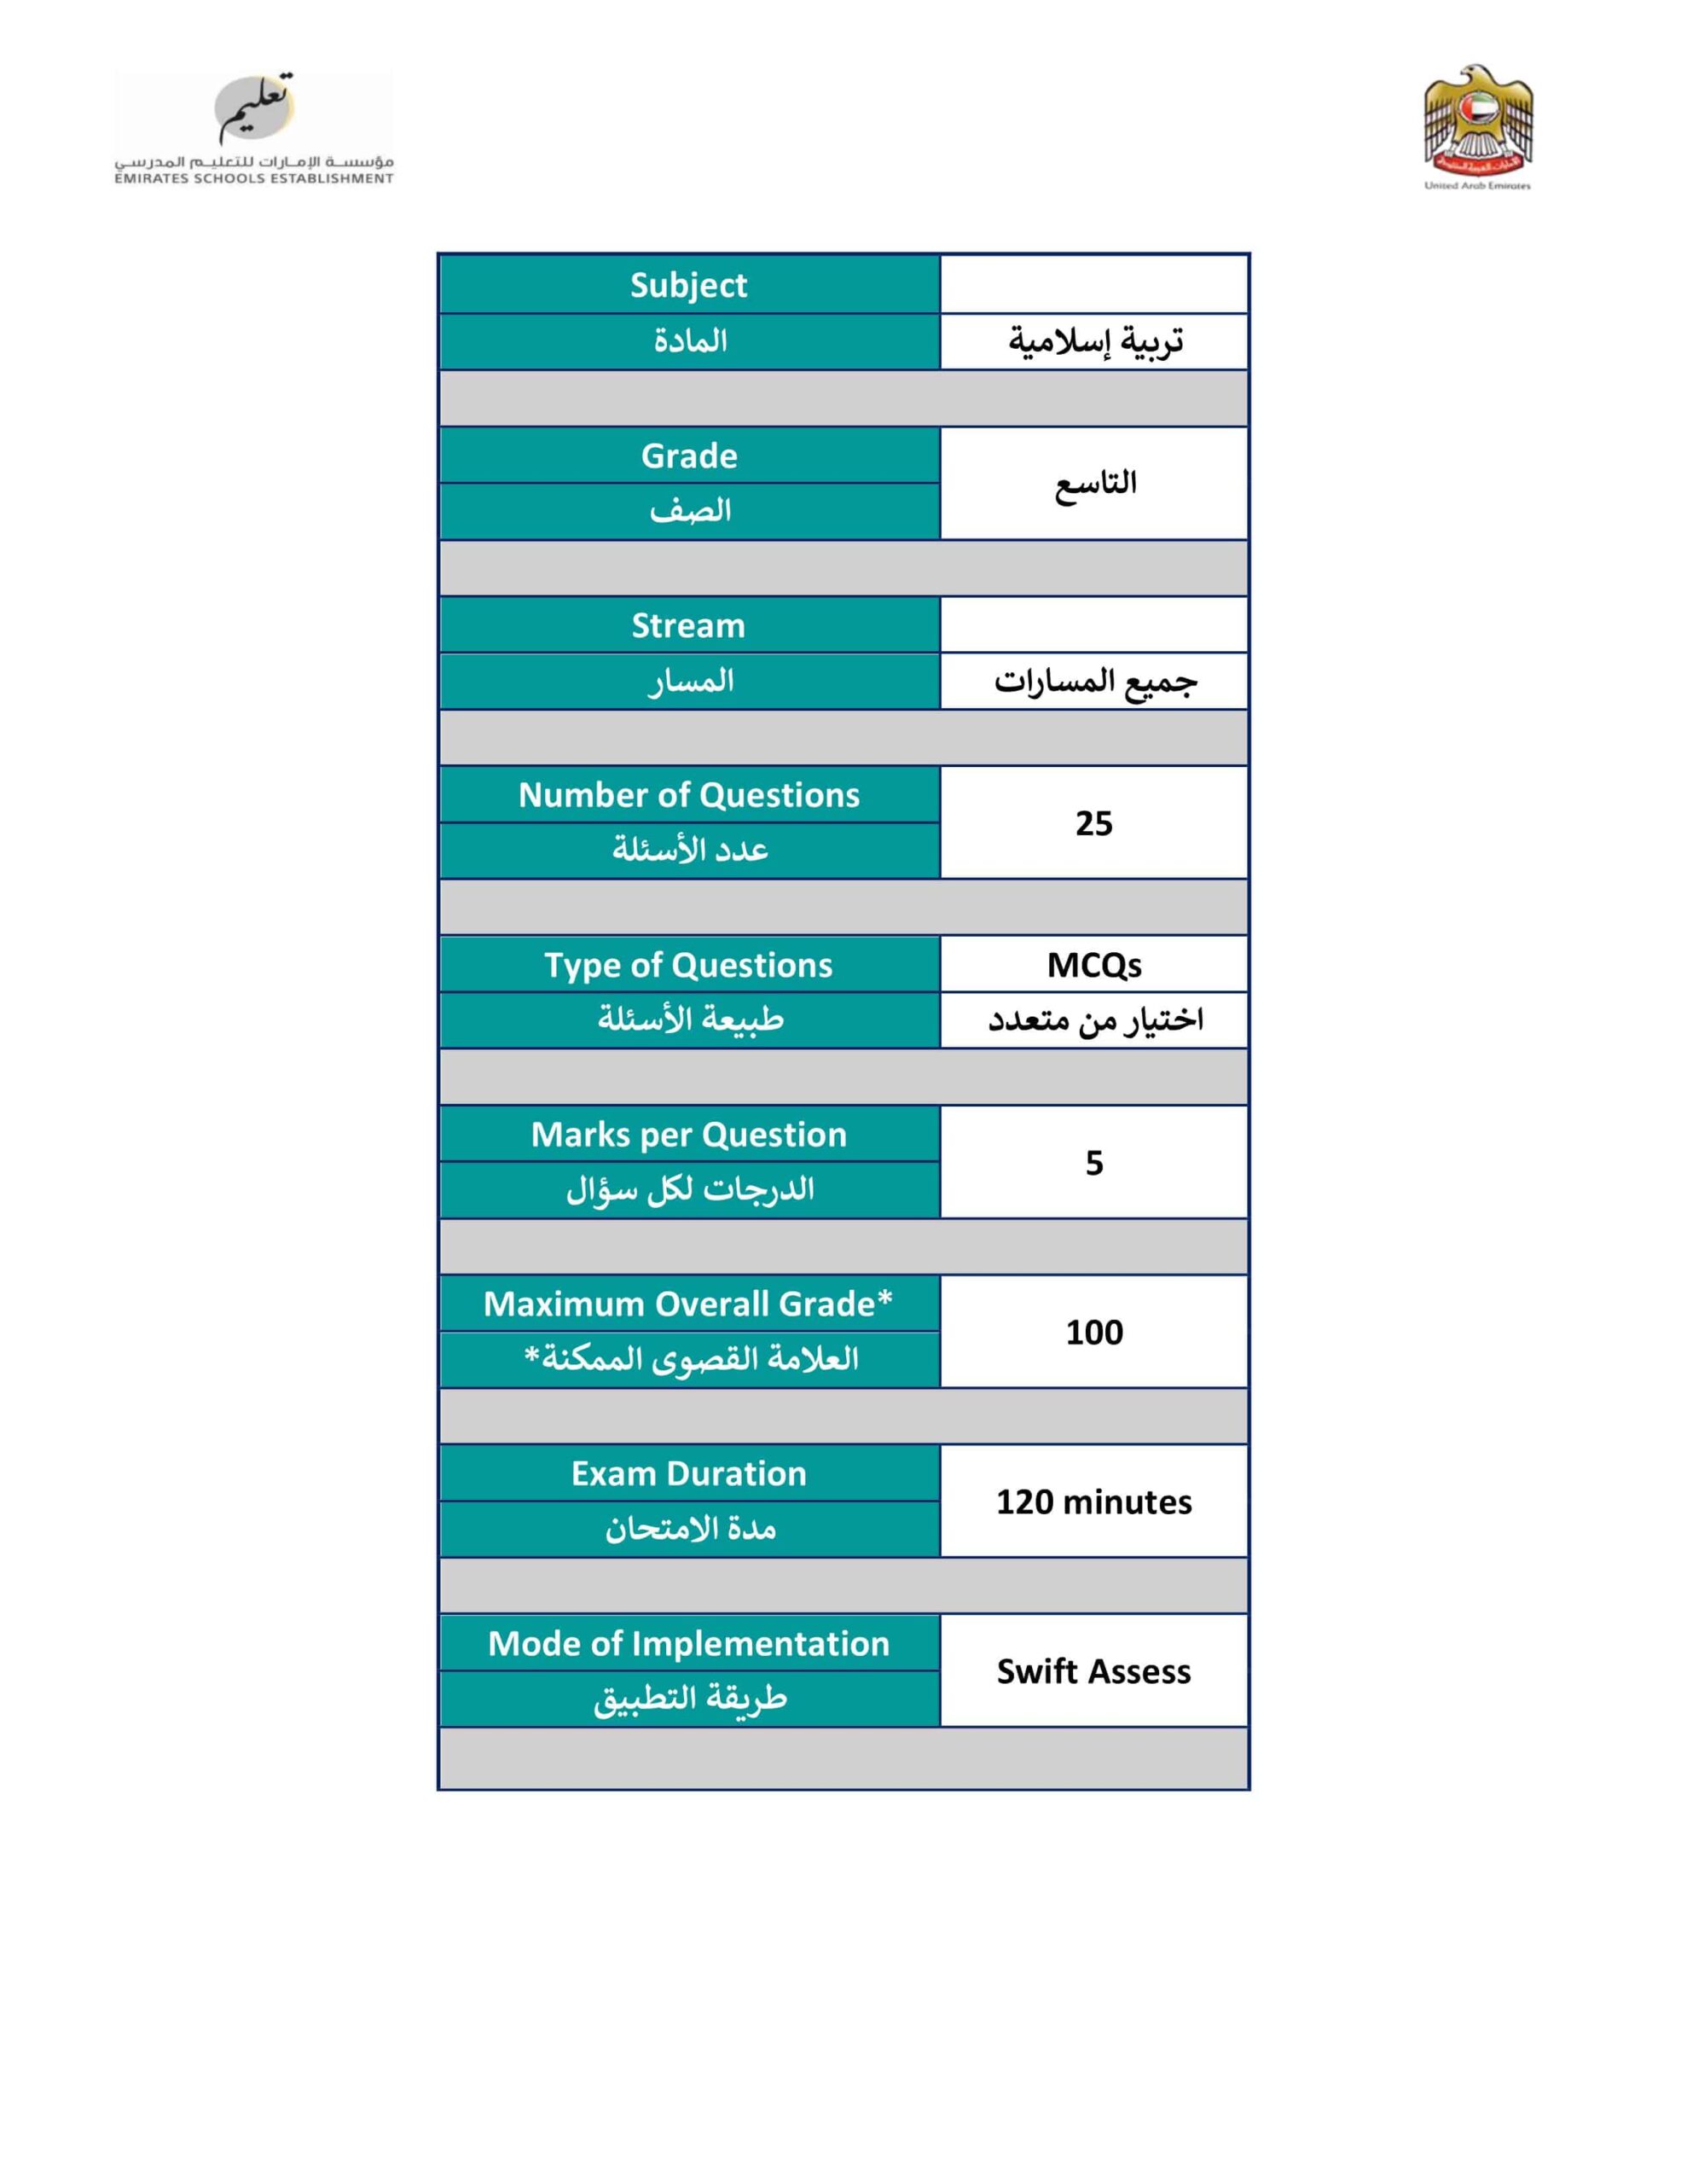 هيكل امتحان التربية الإسلامية الصف التاسع الفصل الدراسي الثالث 2021-2022